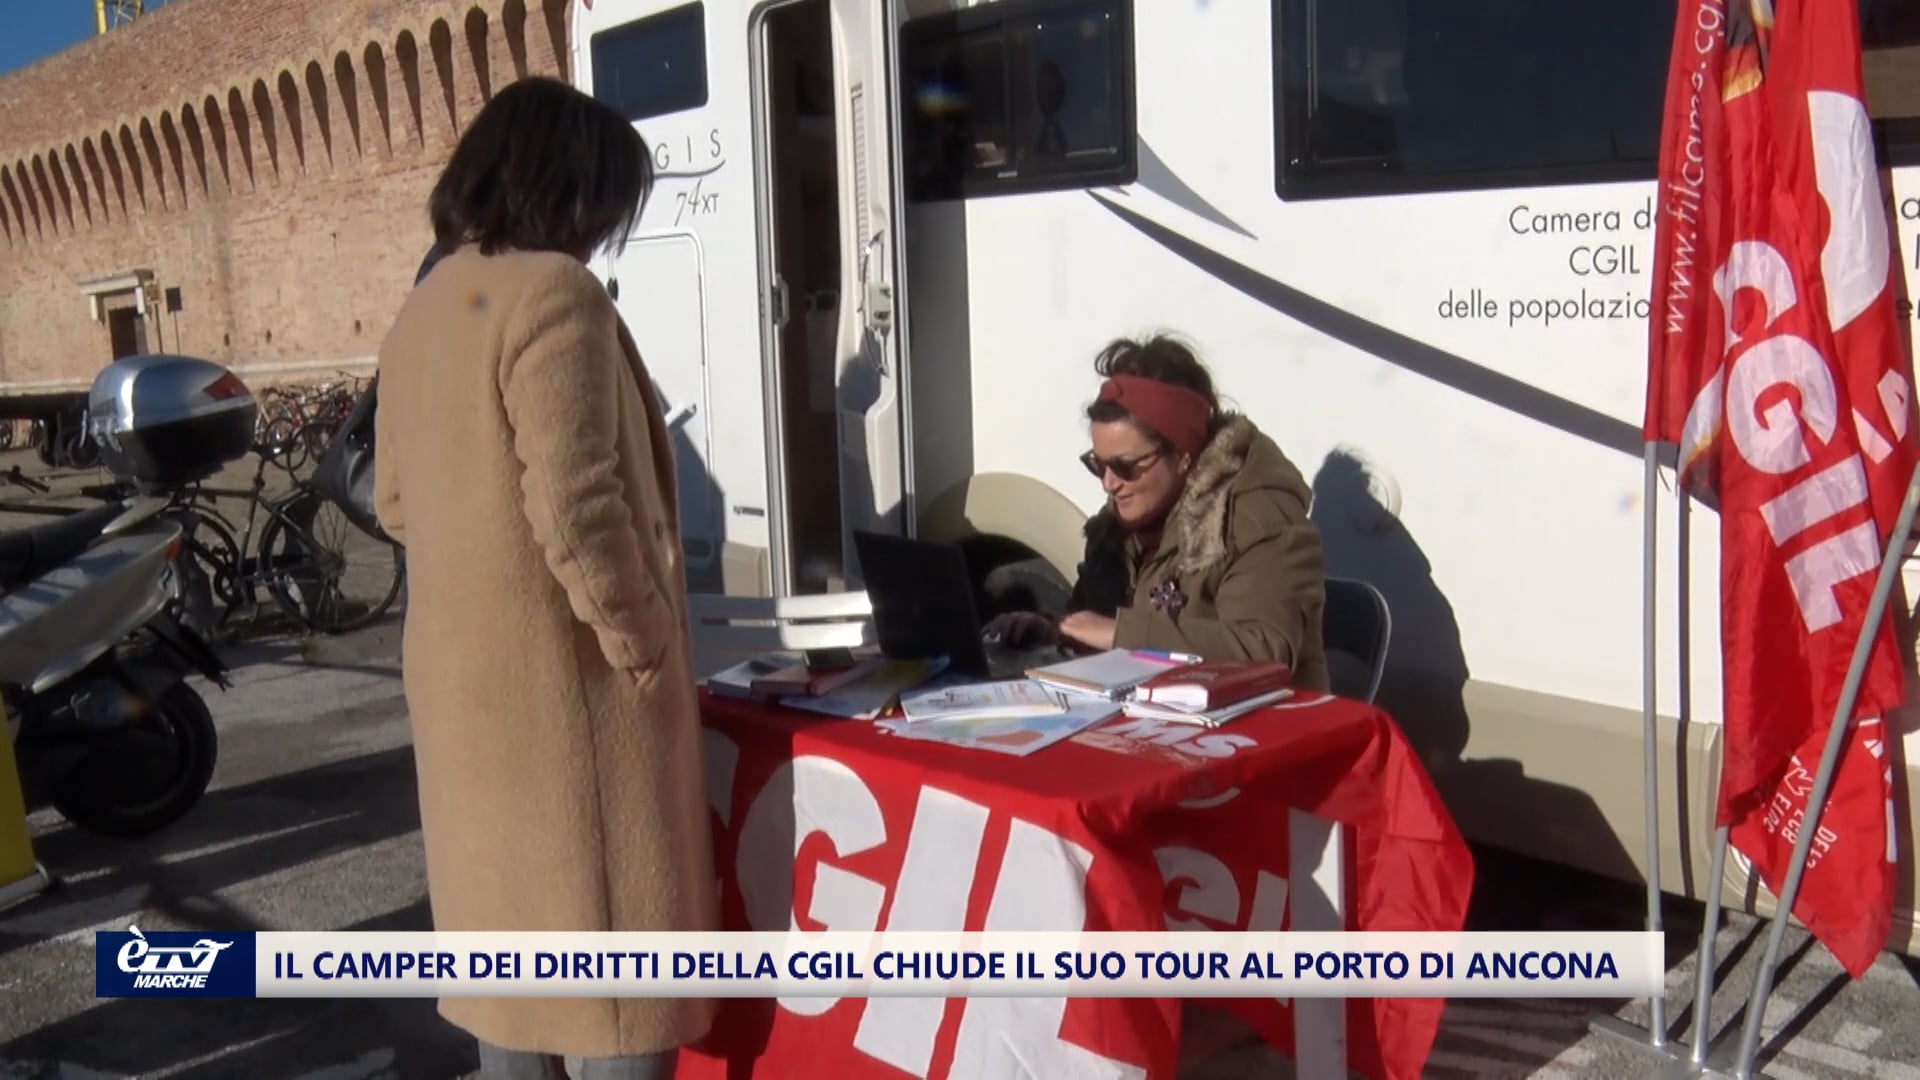 Il camper dei diritti della CGIL chiude il suo tour nell'Area Fincantieri del Porto di Ancona